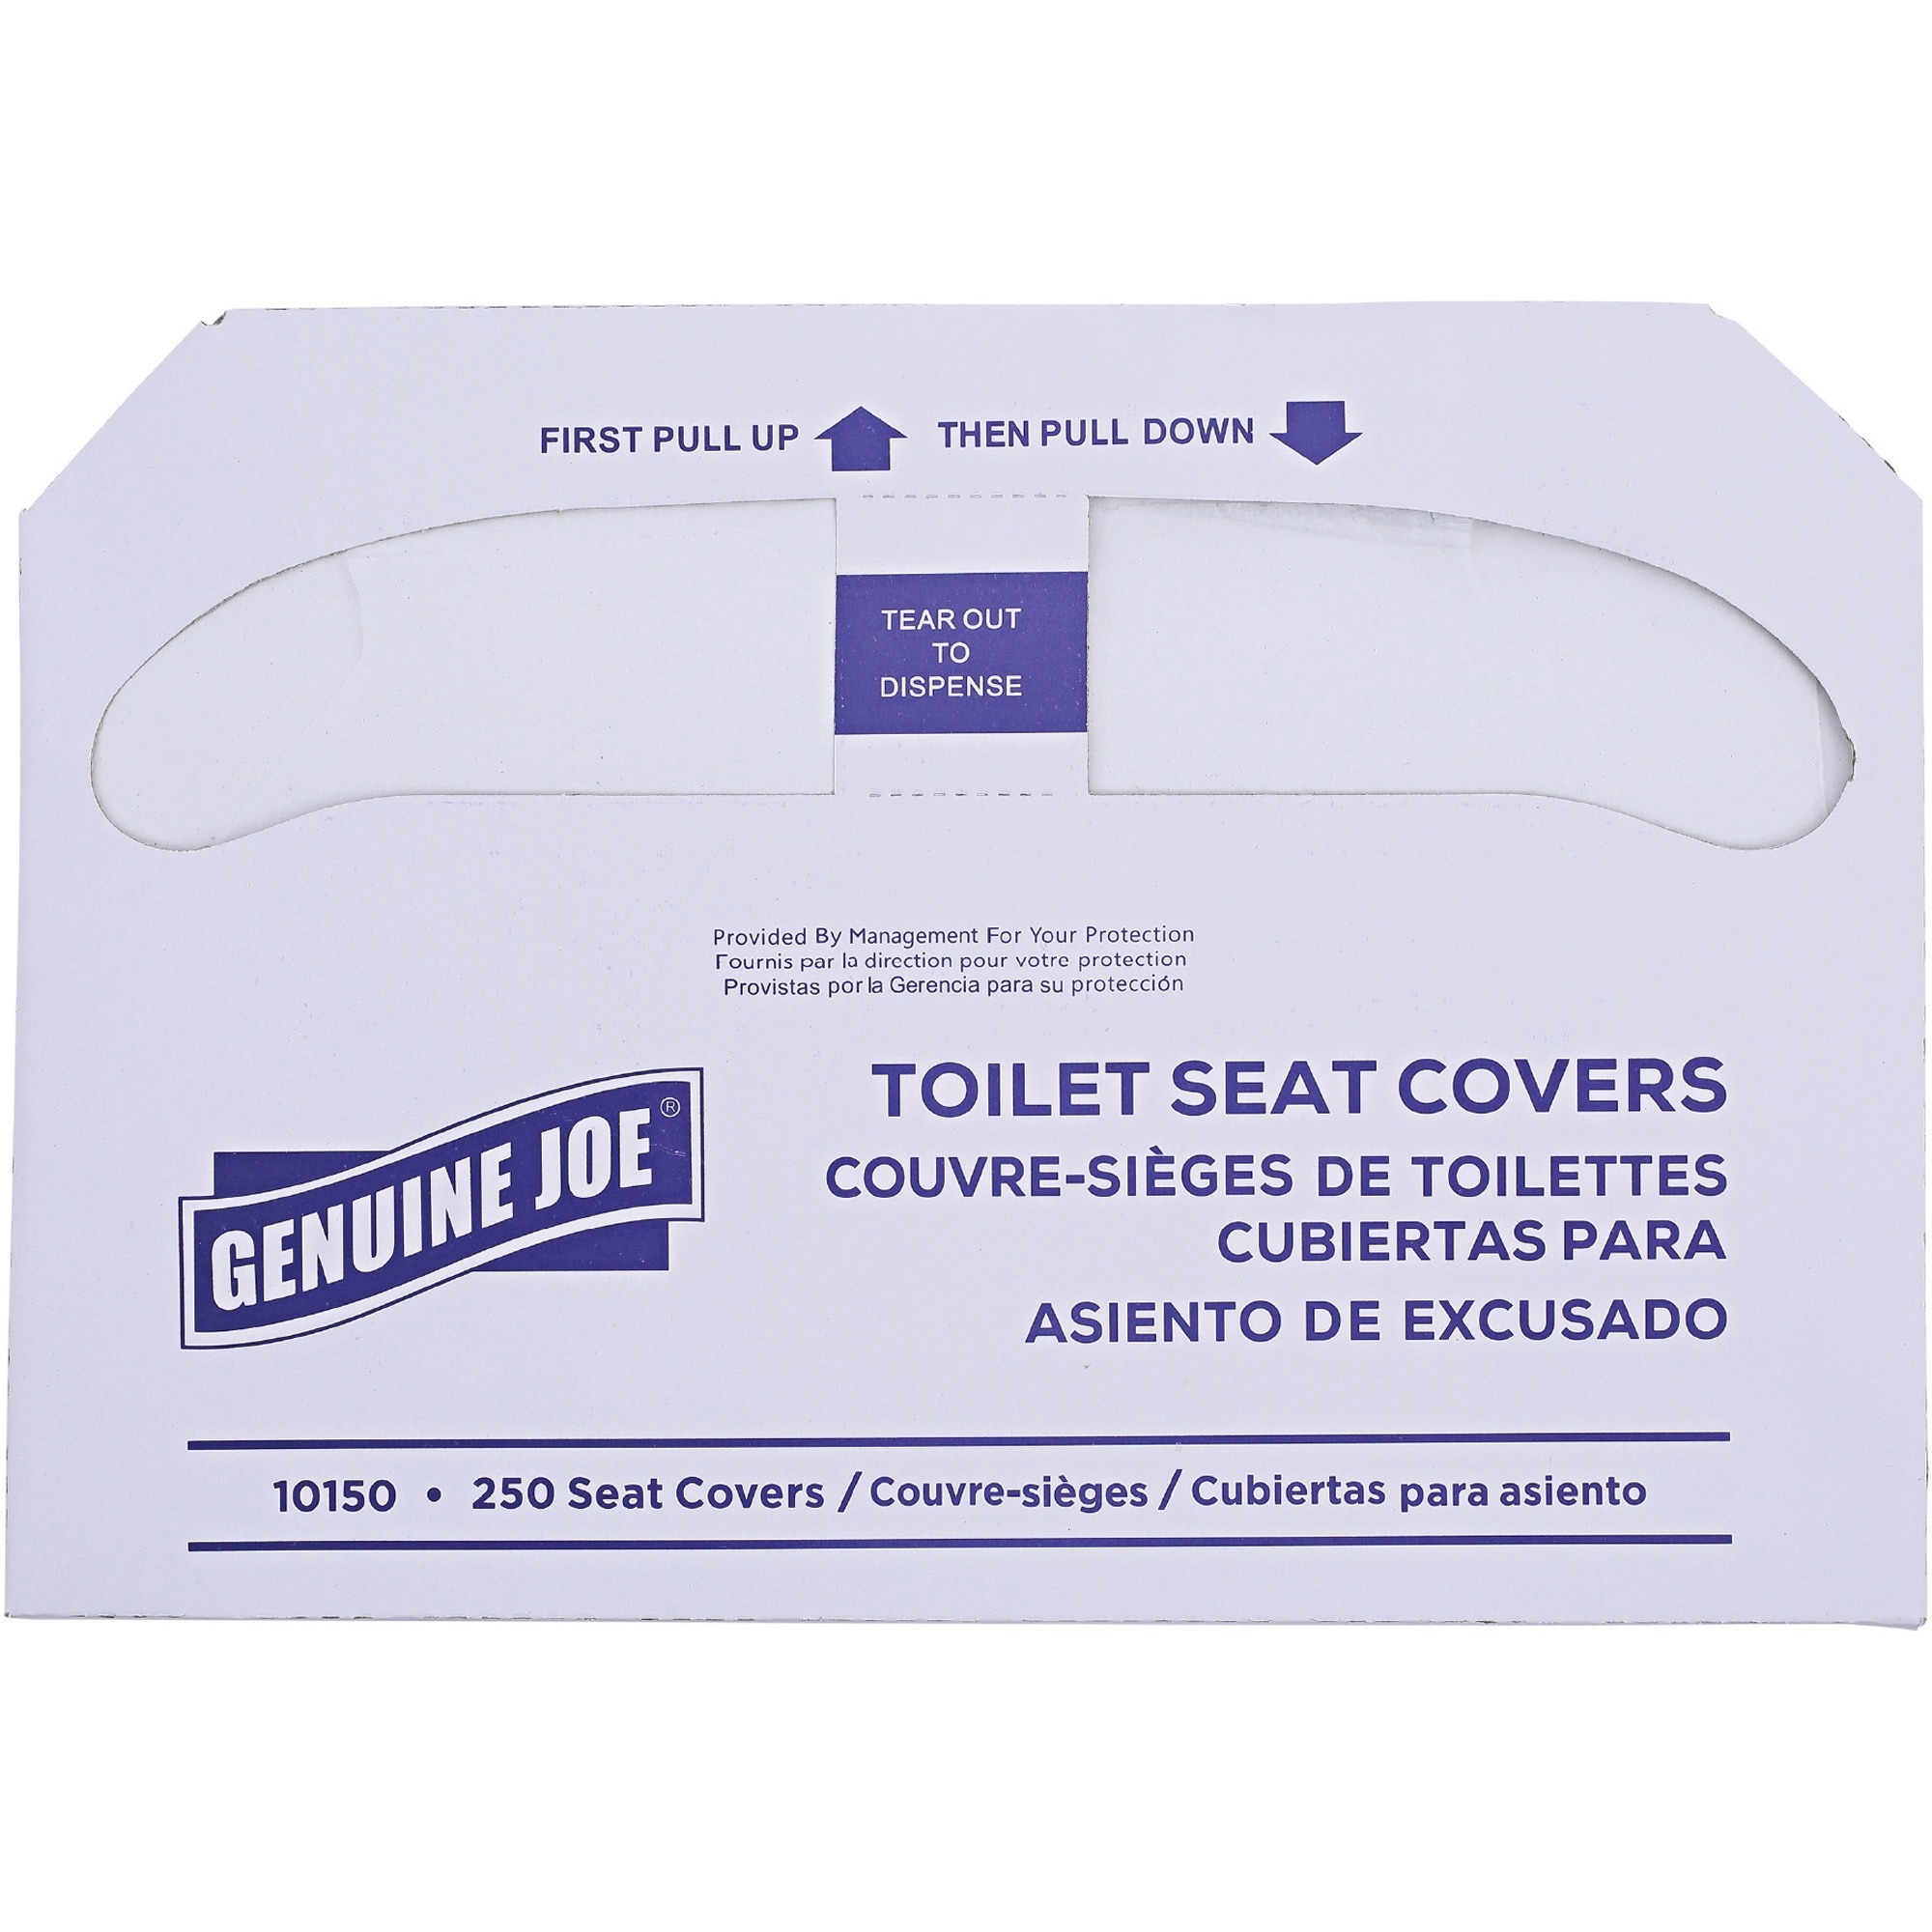 Toilet seat covers - Korjo